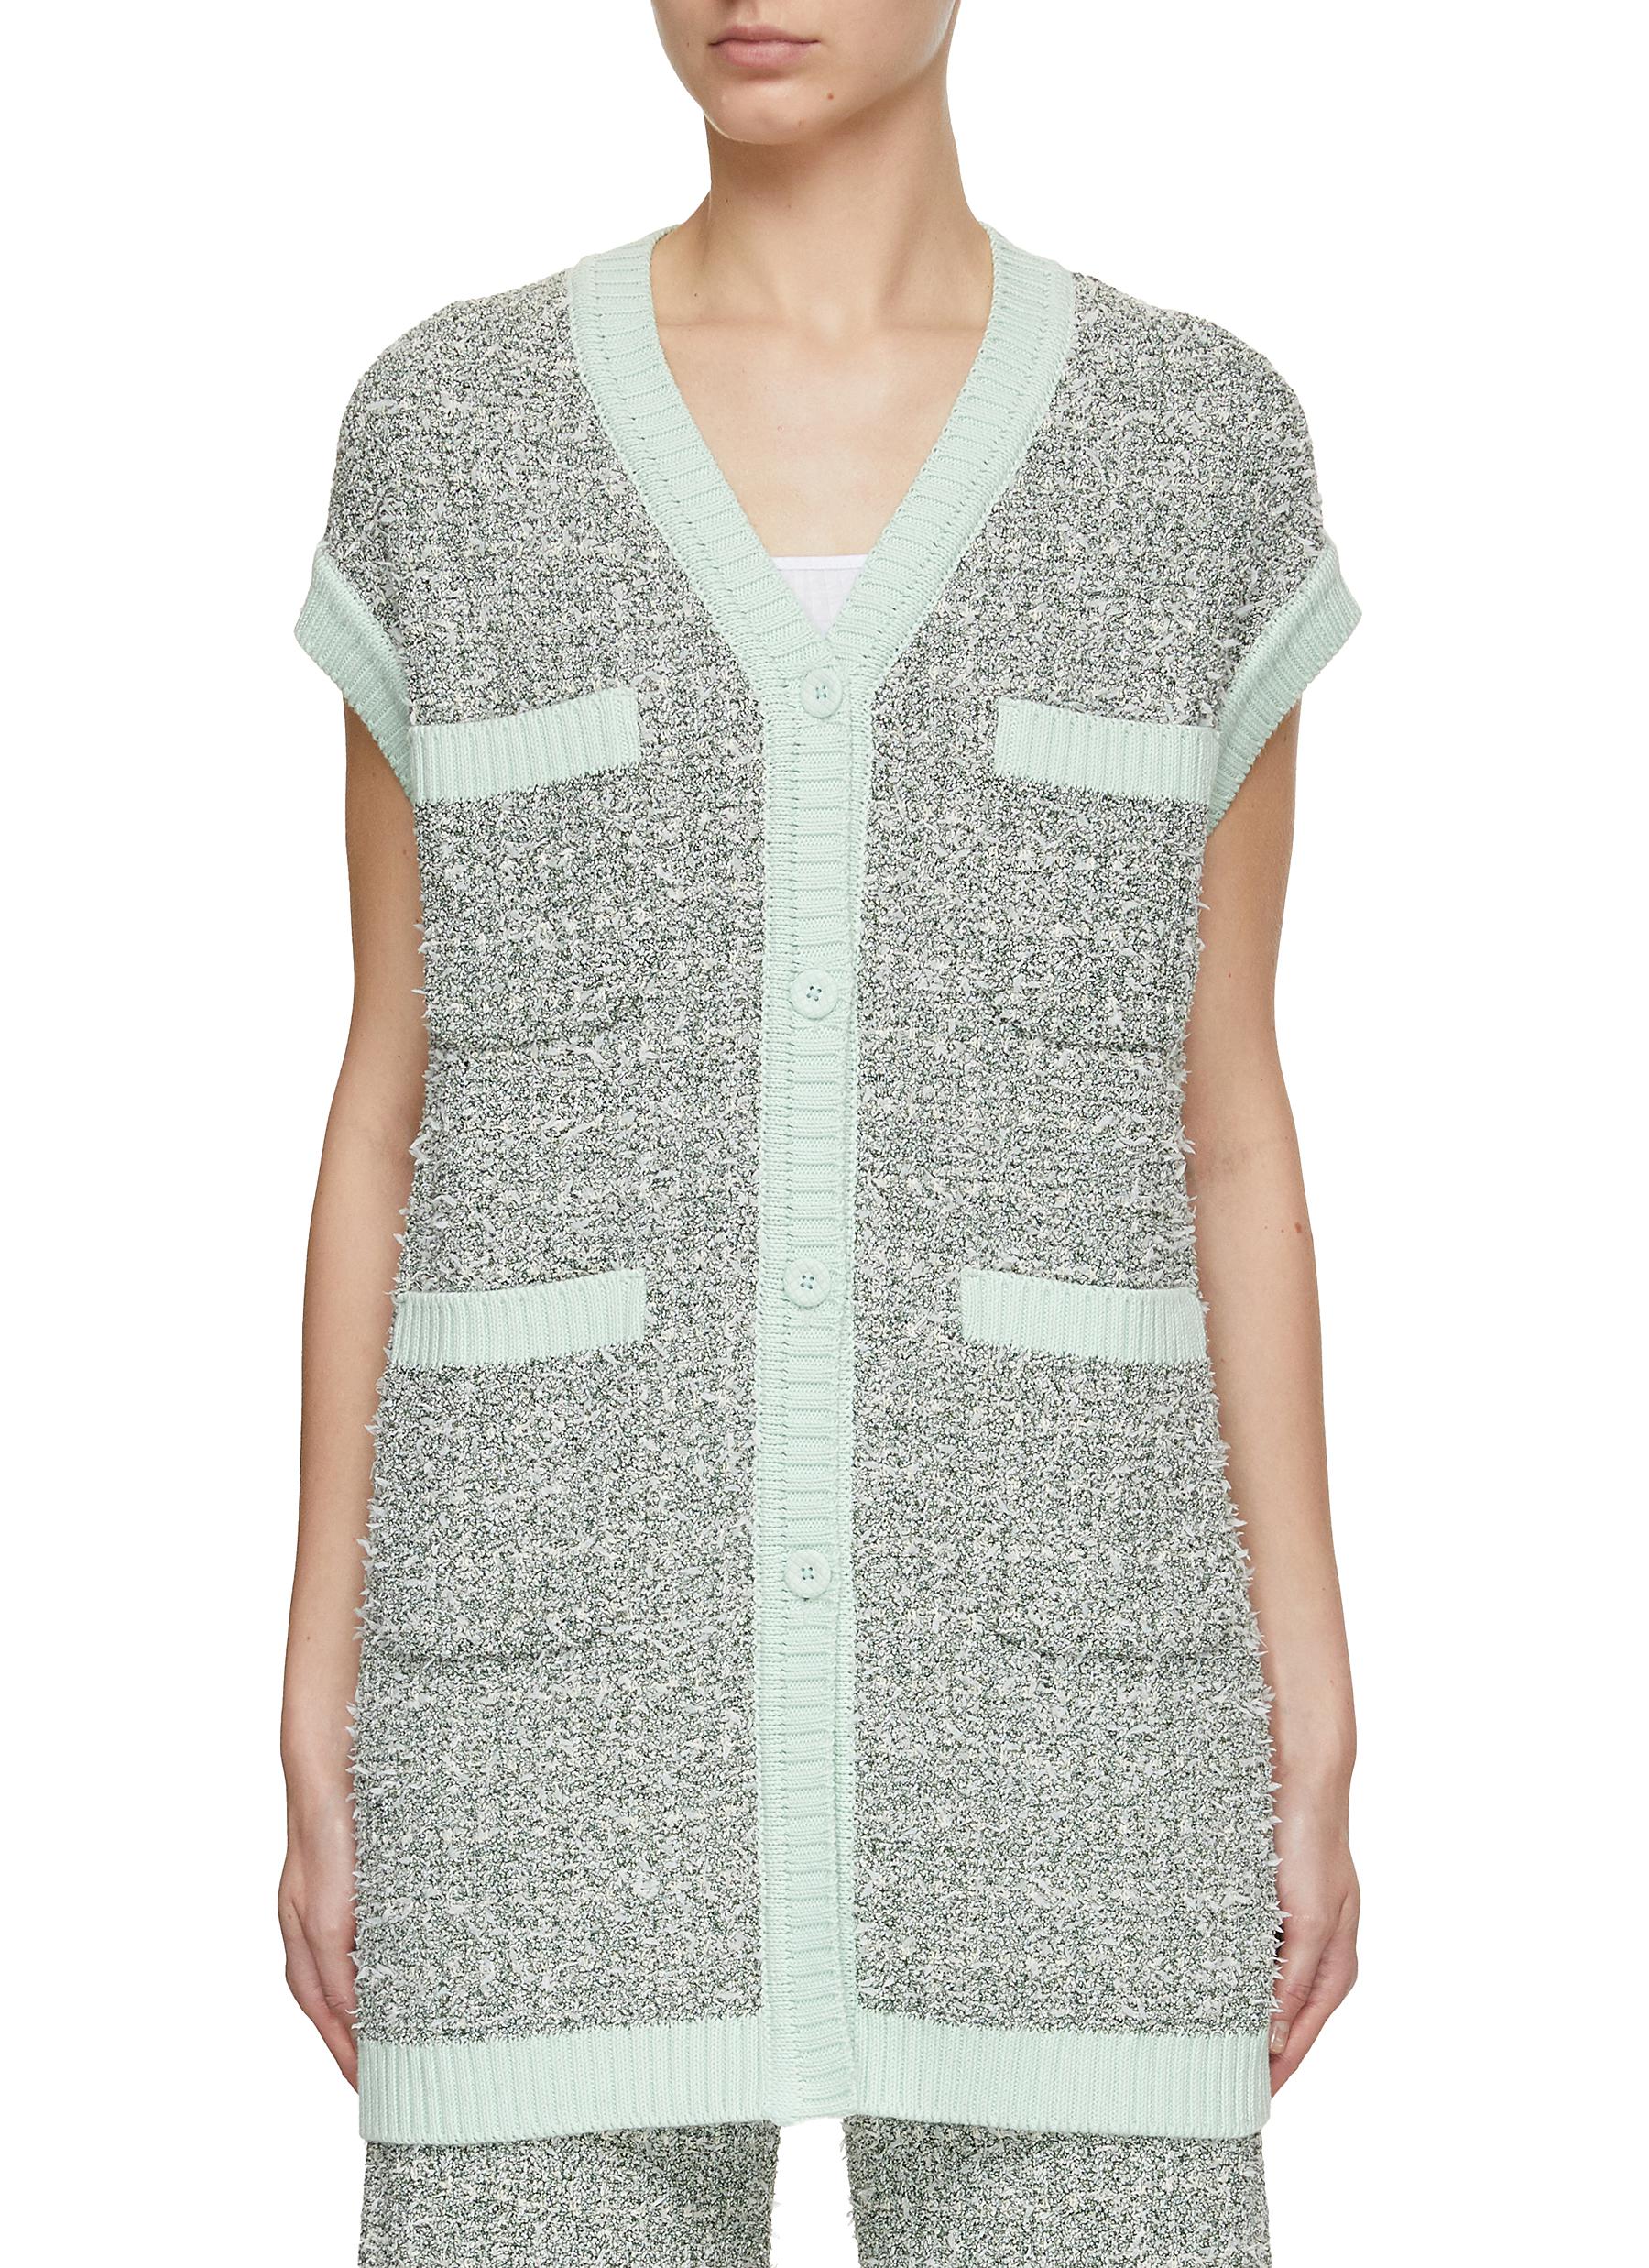 V-Neck Contrast Trim Tweed Knit Vest